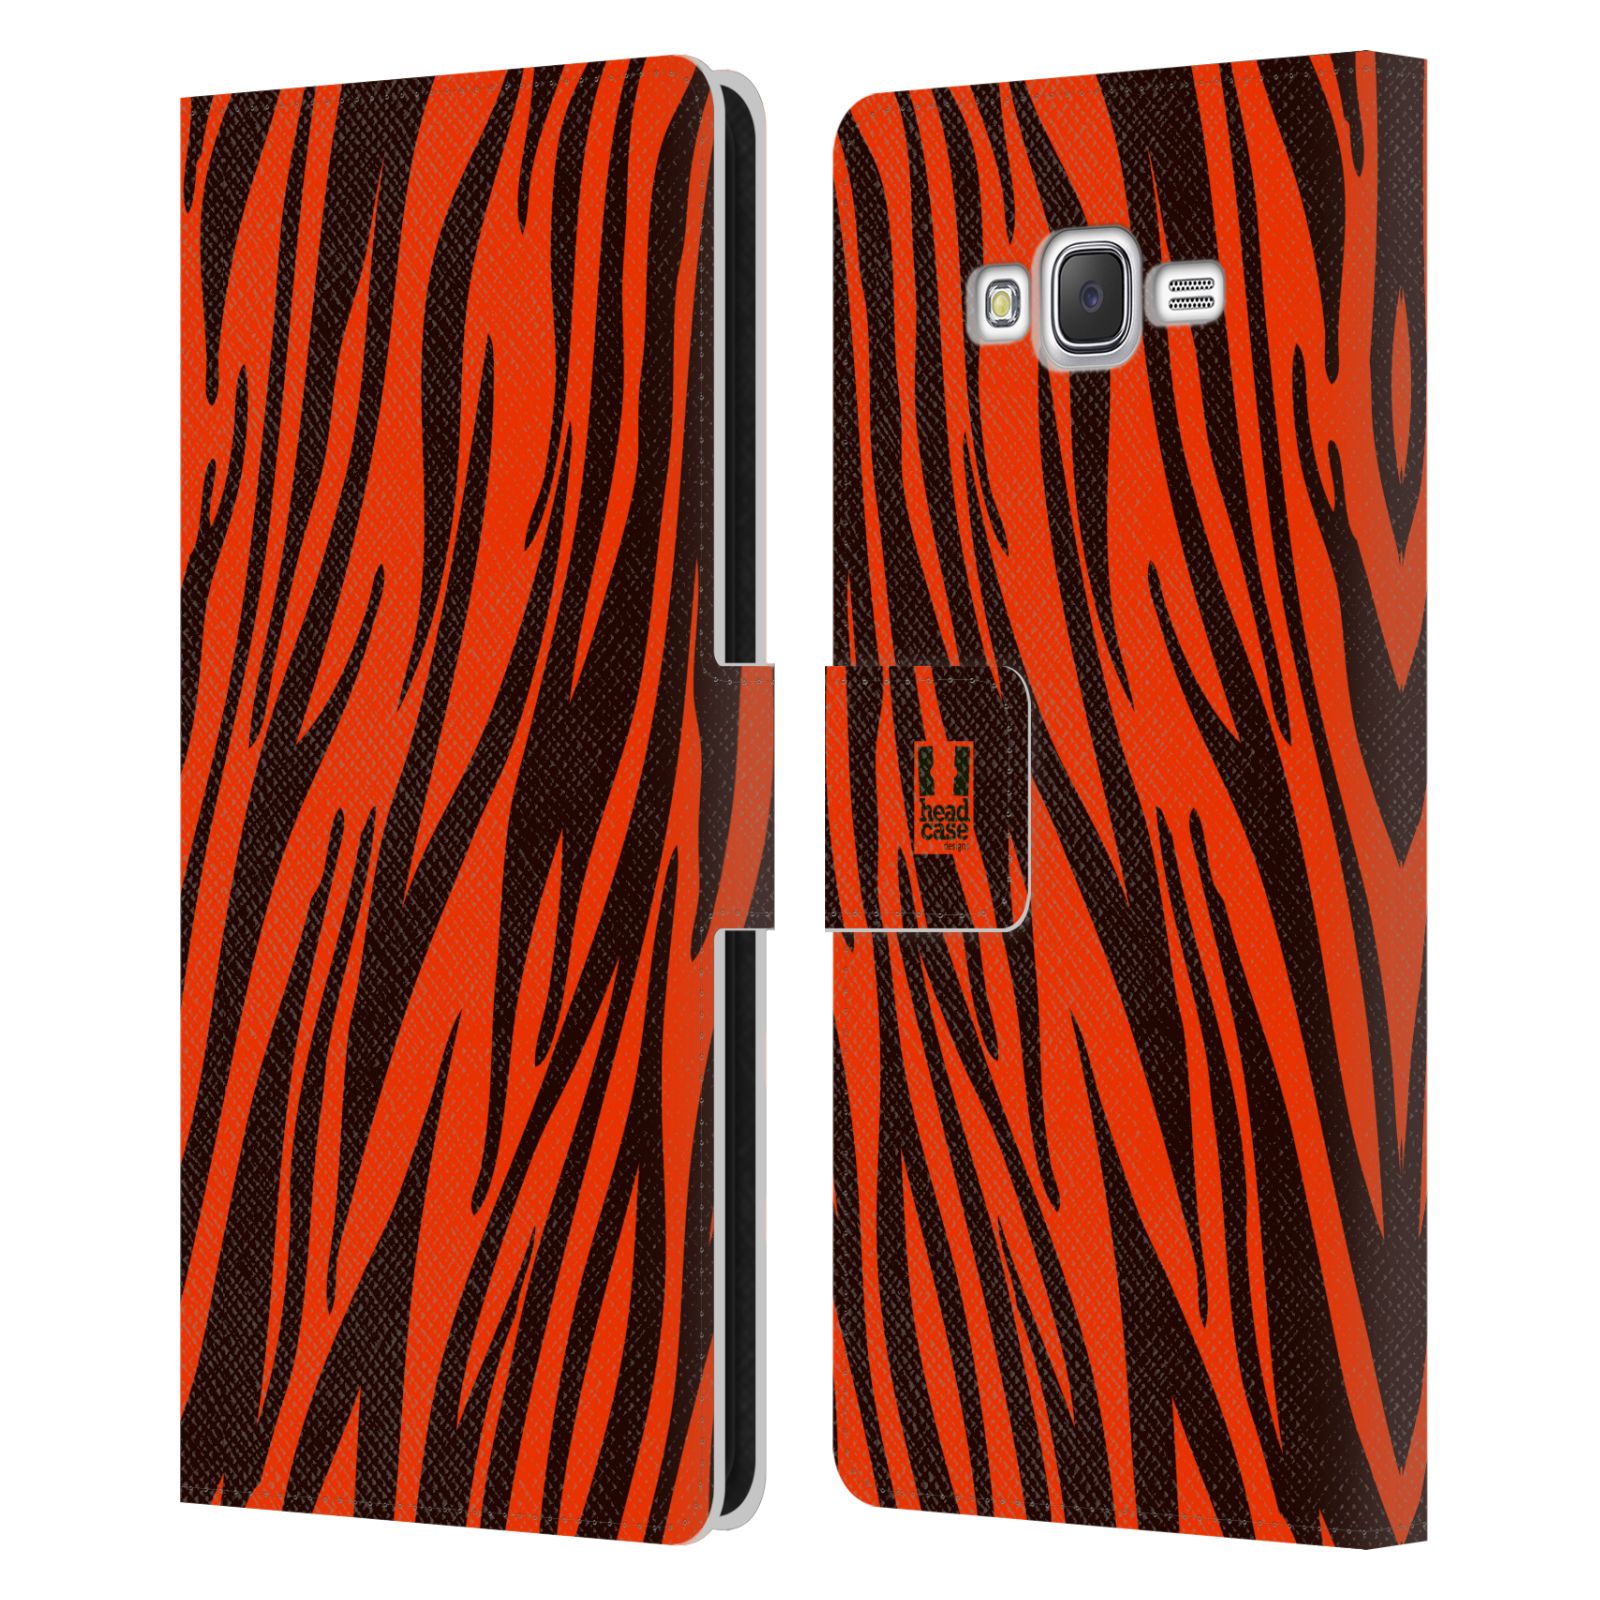 HEAD CASE Flipové pouzdro pro mobil Samsung Galaxy J7, J700 Zvířecí barevné vzory oranžový tygr